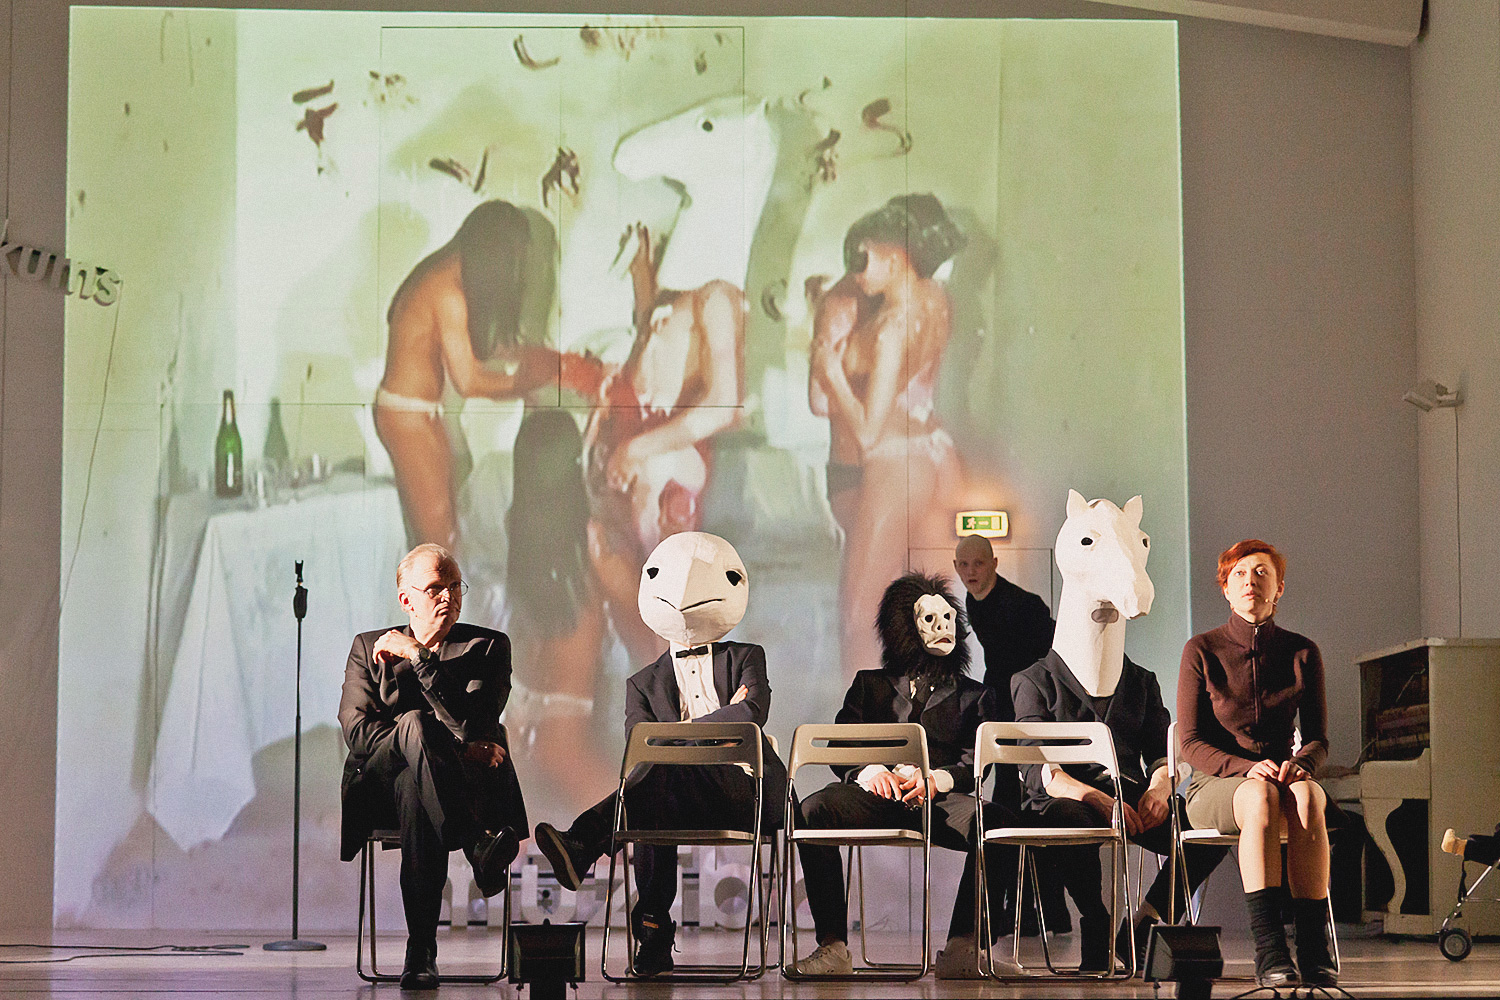 В «Войцеке» в постановке Кирилла Серебренникова место действия перенесено из захолустного немецкого городка в галерею современного искусства — некоторые персонажи расхаживают в звериных масках на фоне видеопроекции